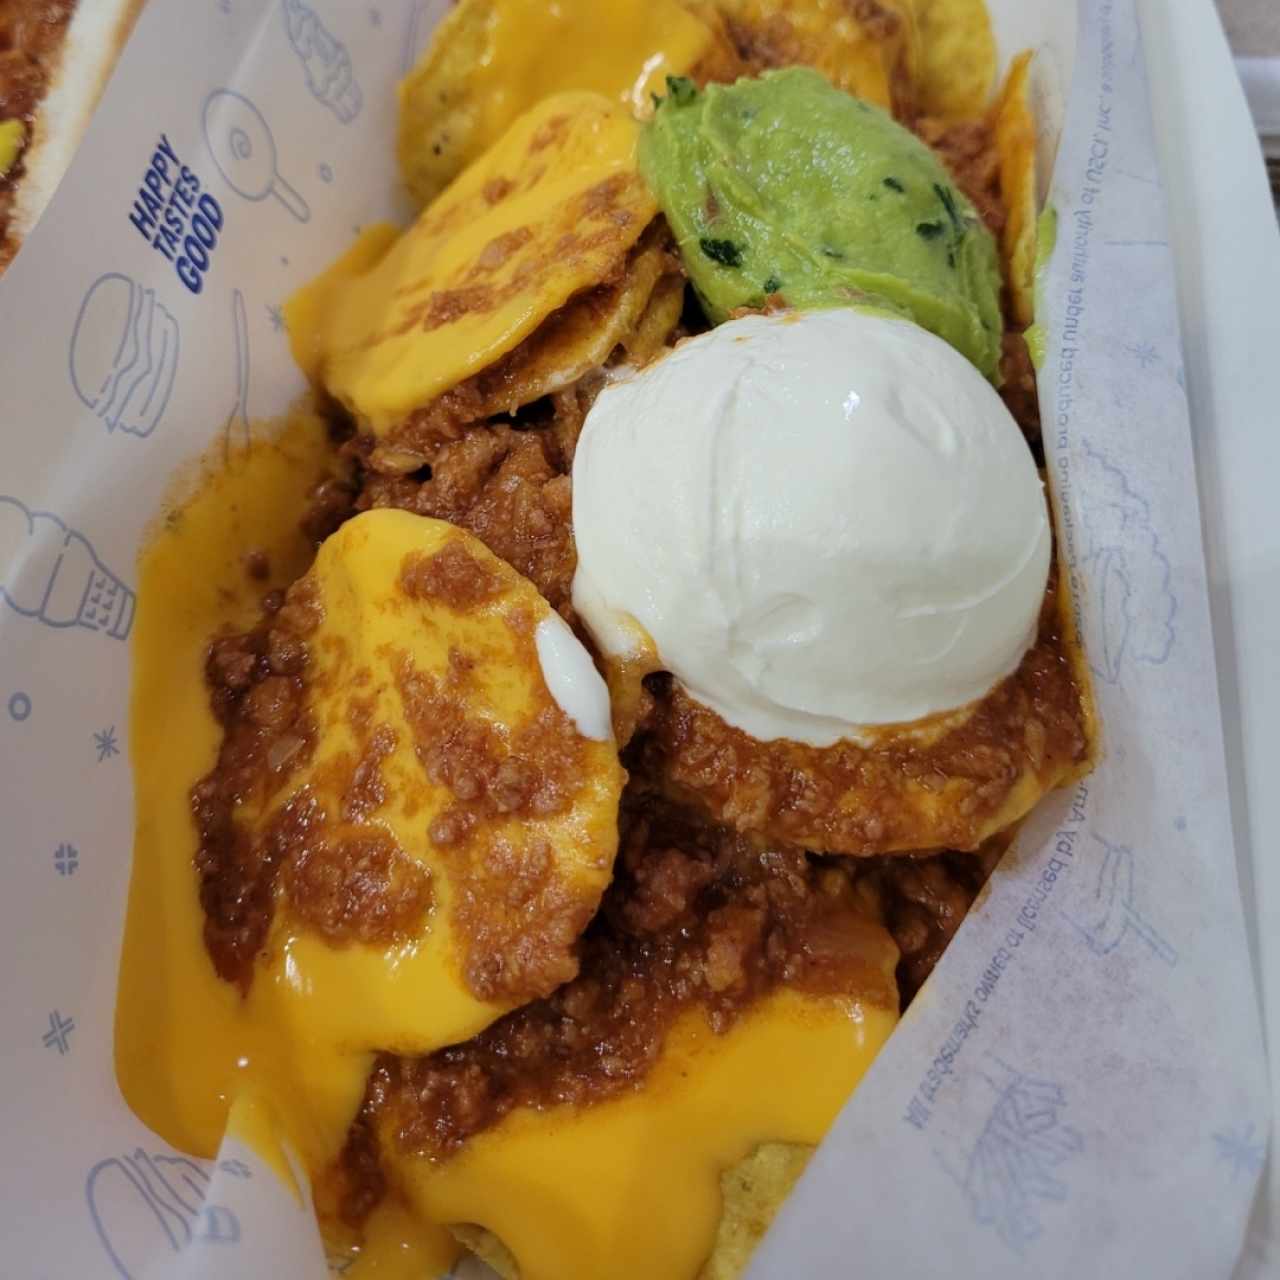 nachos con chili/queso